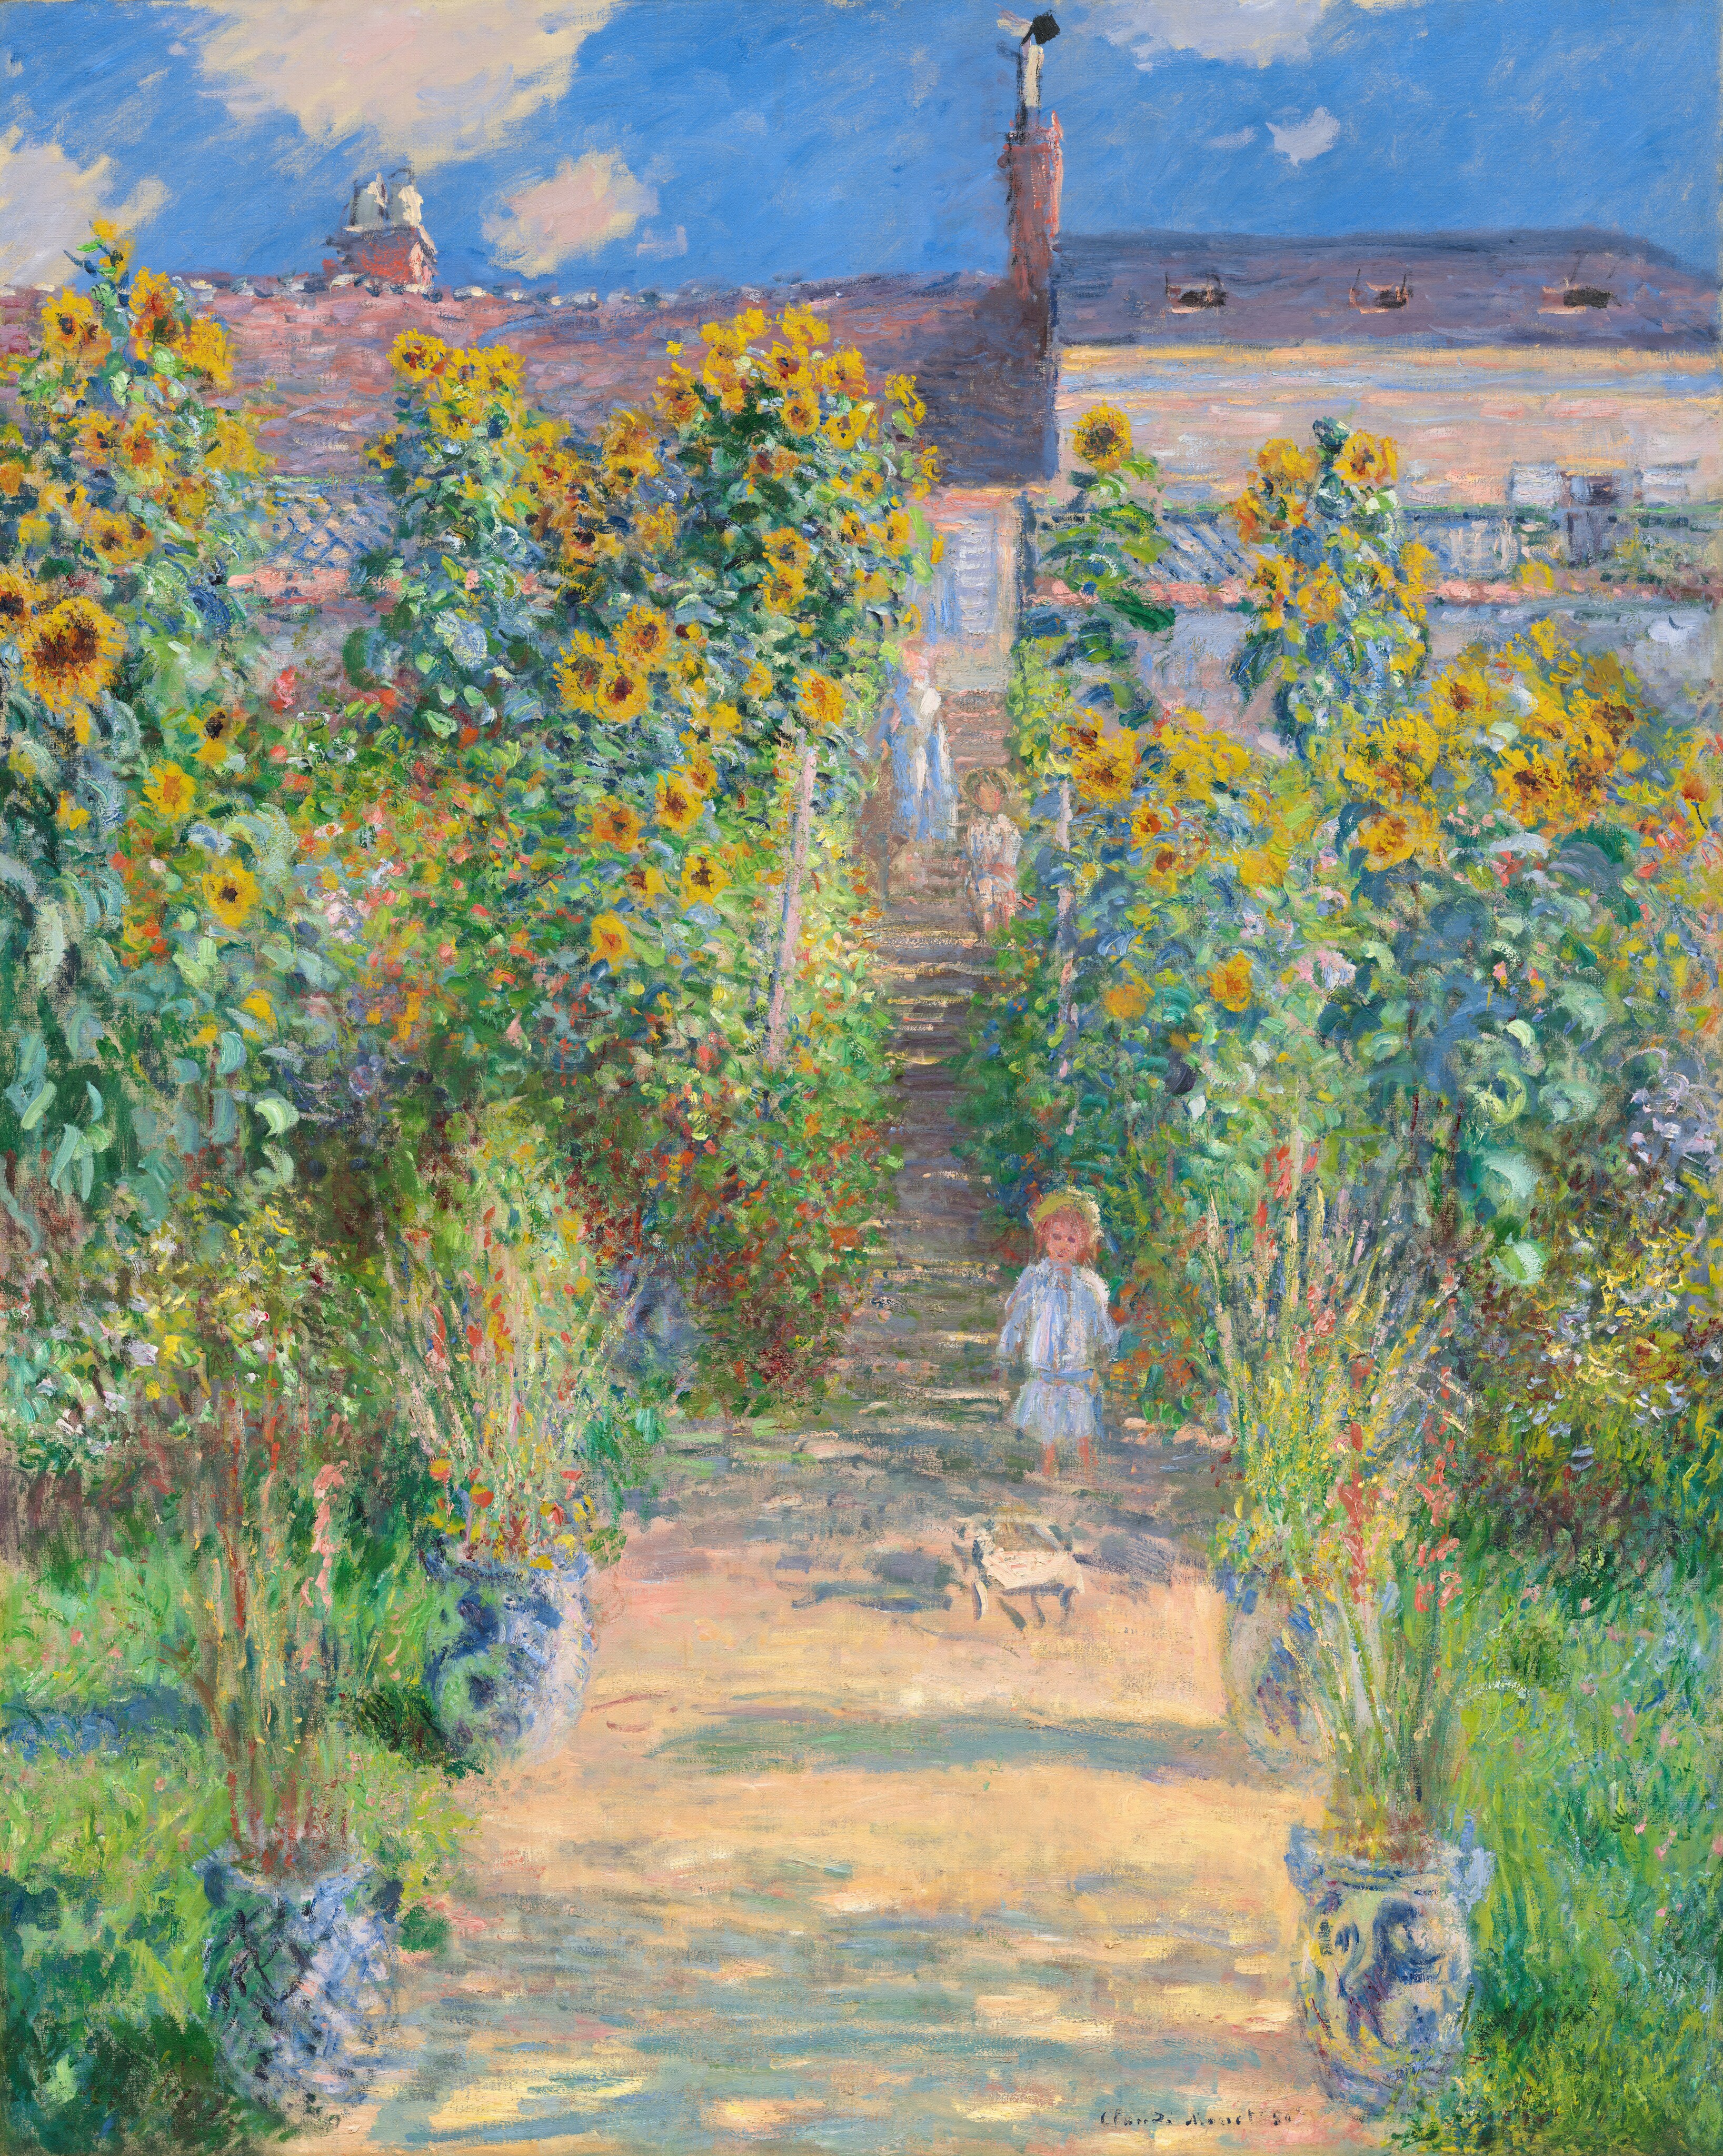 Tranh sơn dầu The Artist's Garden at Vétheuil - 1881 – Claude Monet